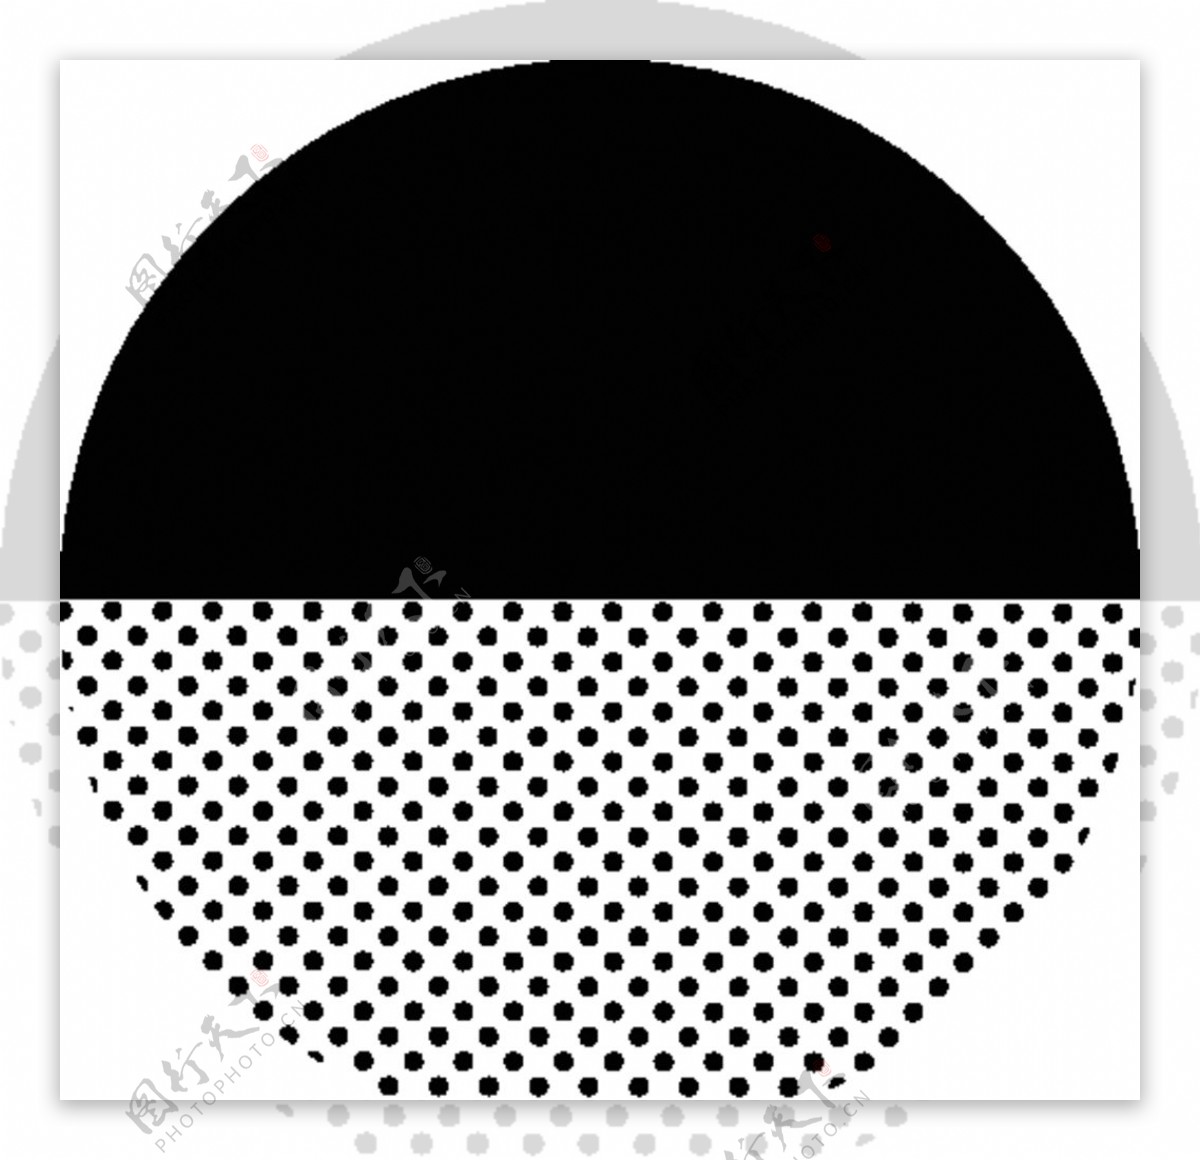 黑白几何半调圆点网格图片